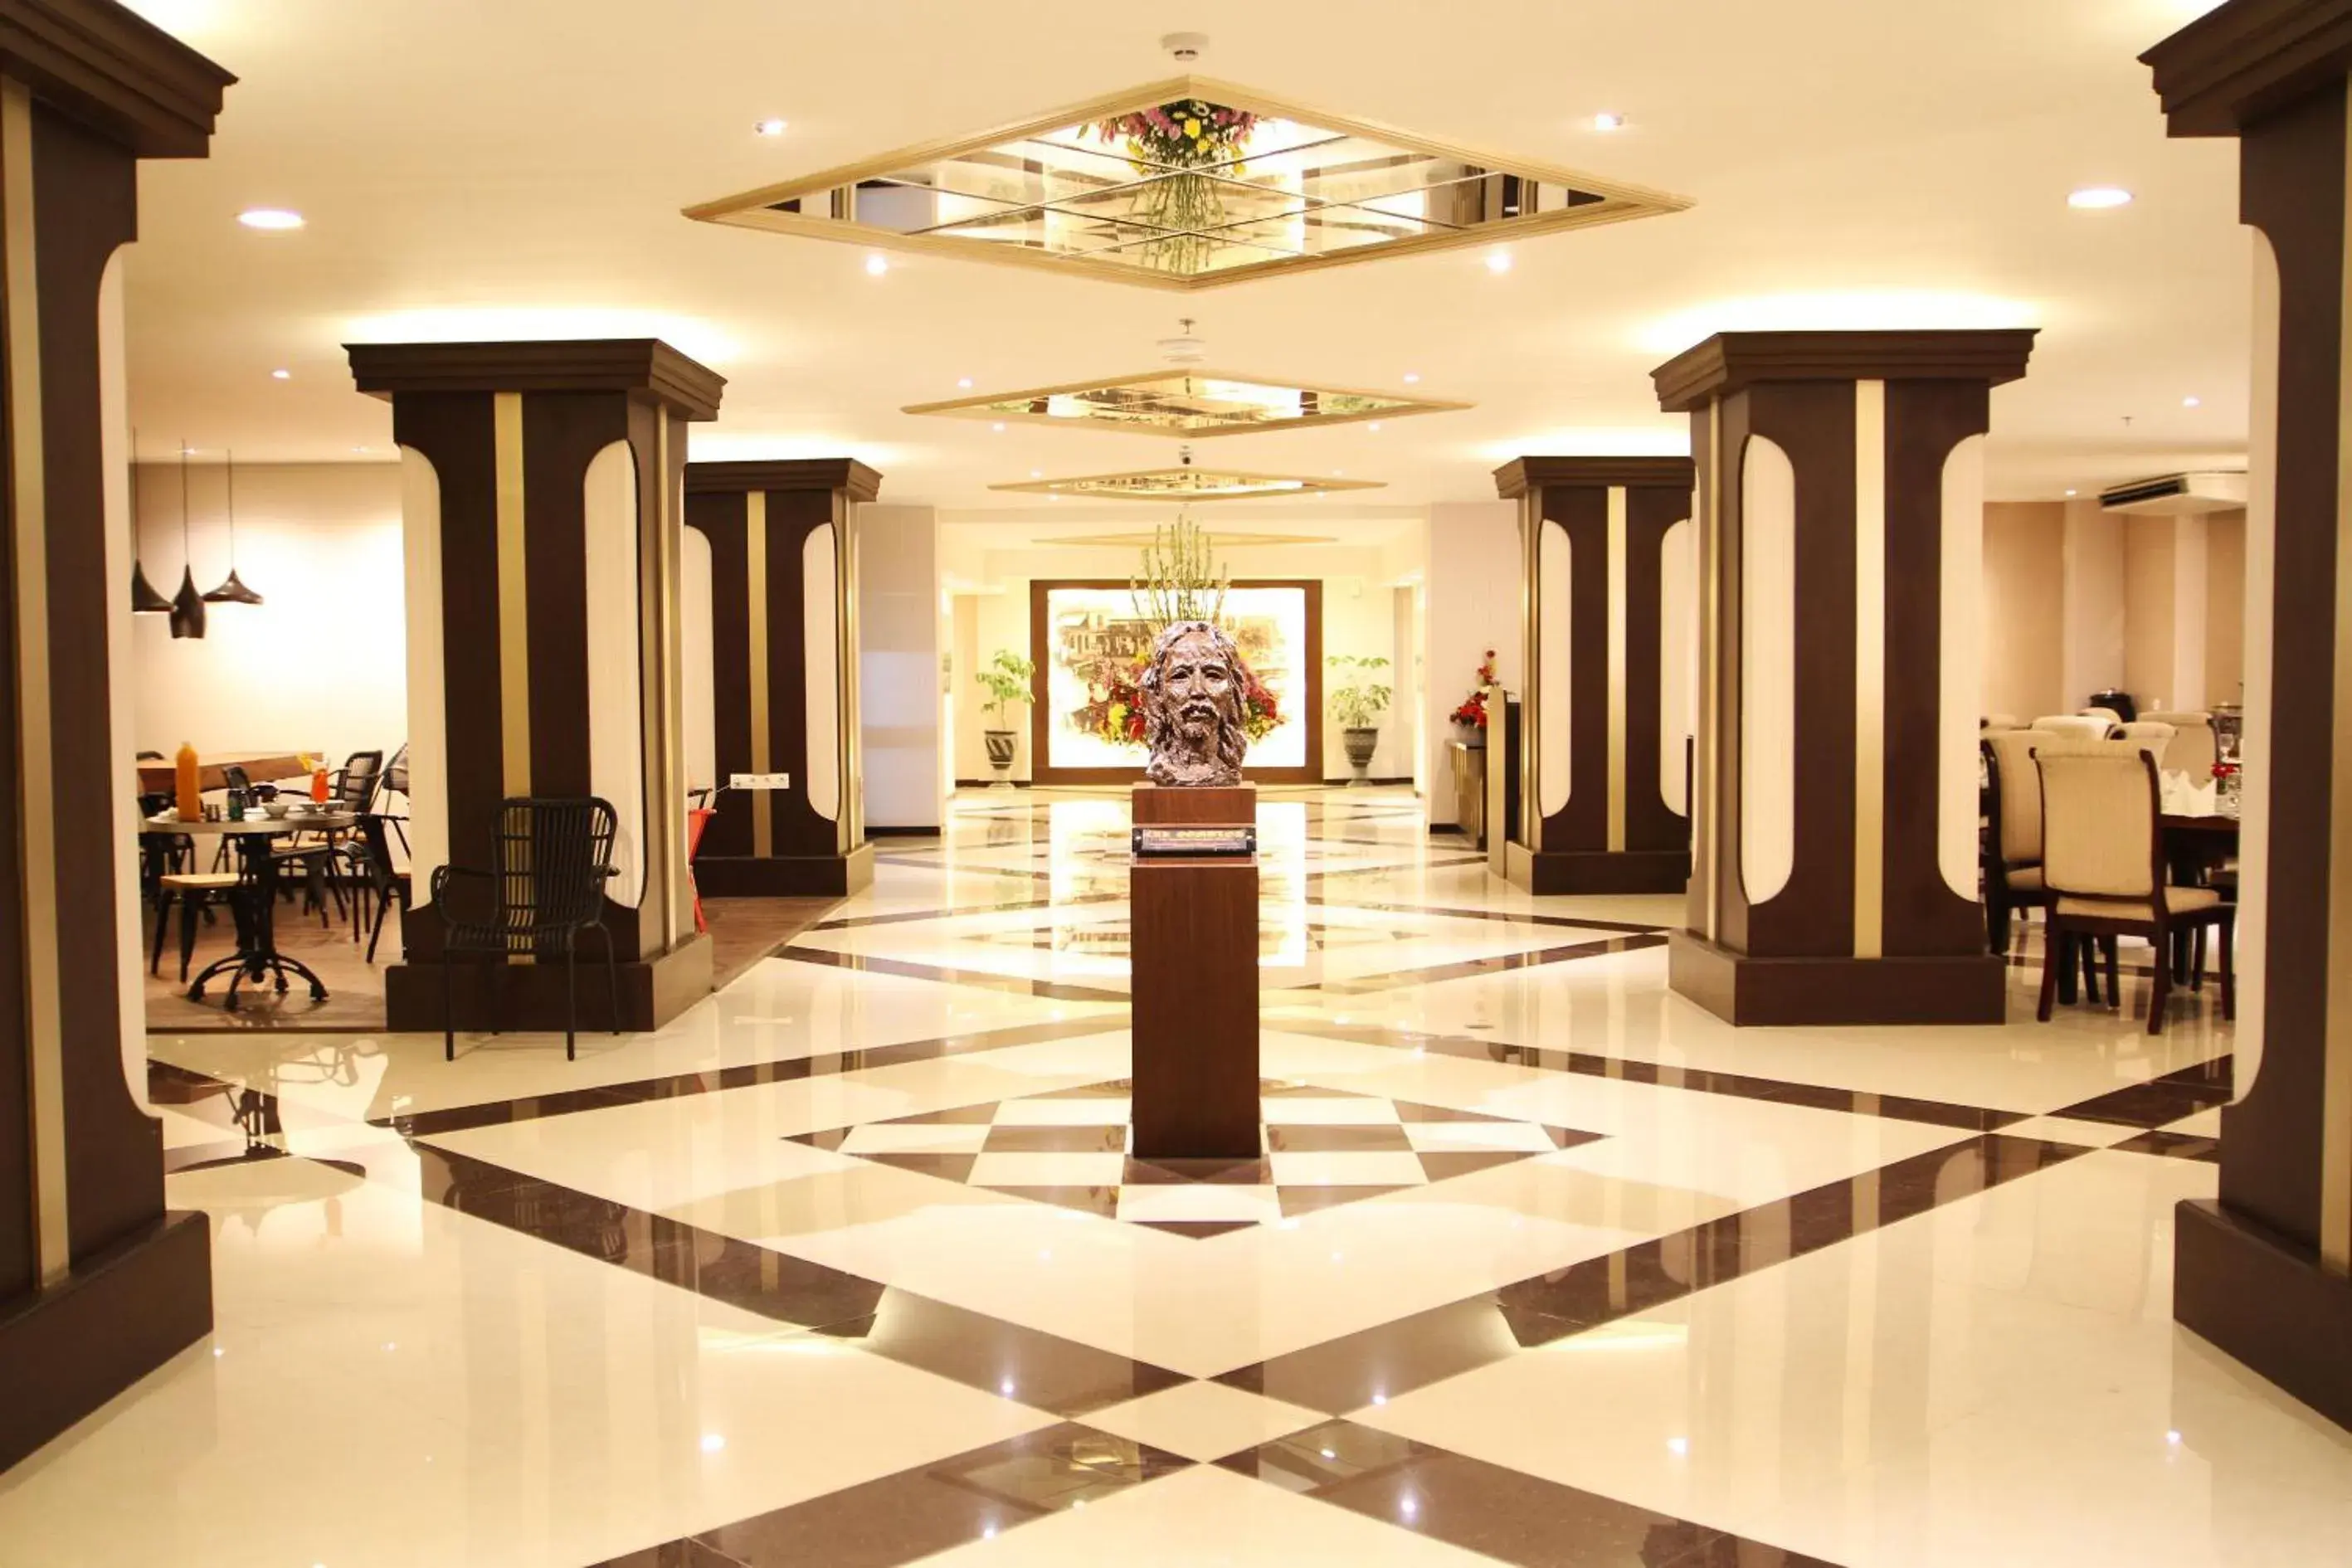 Lobby or reception, Lobby/Reception in Varna Culture Hotel Soerabaia